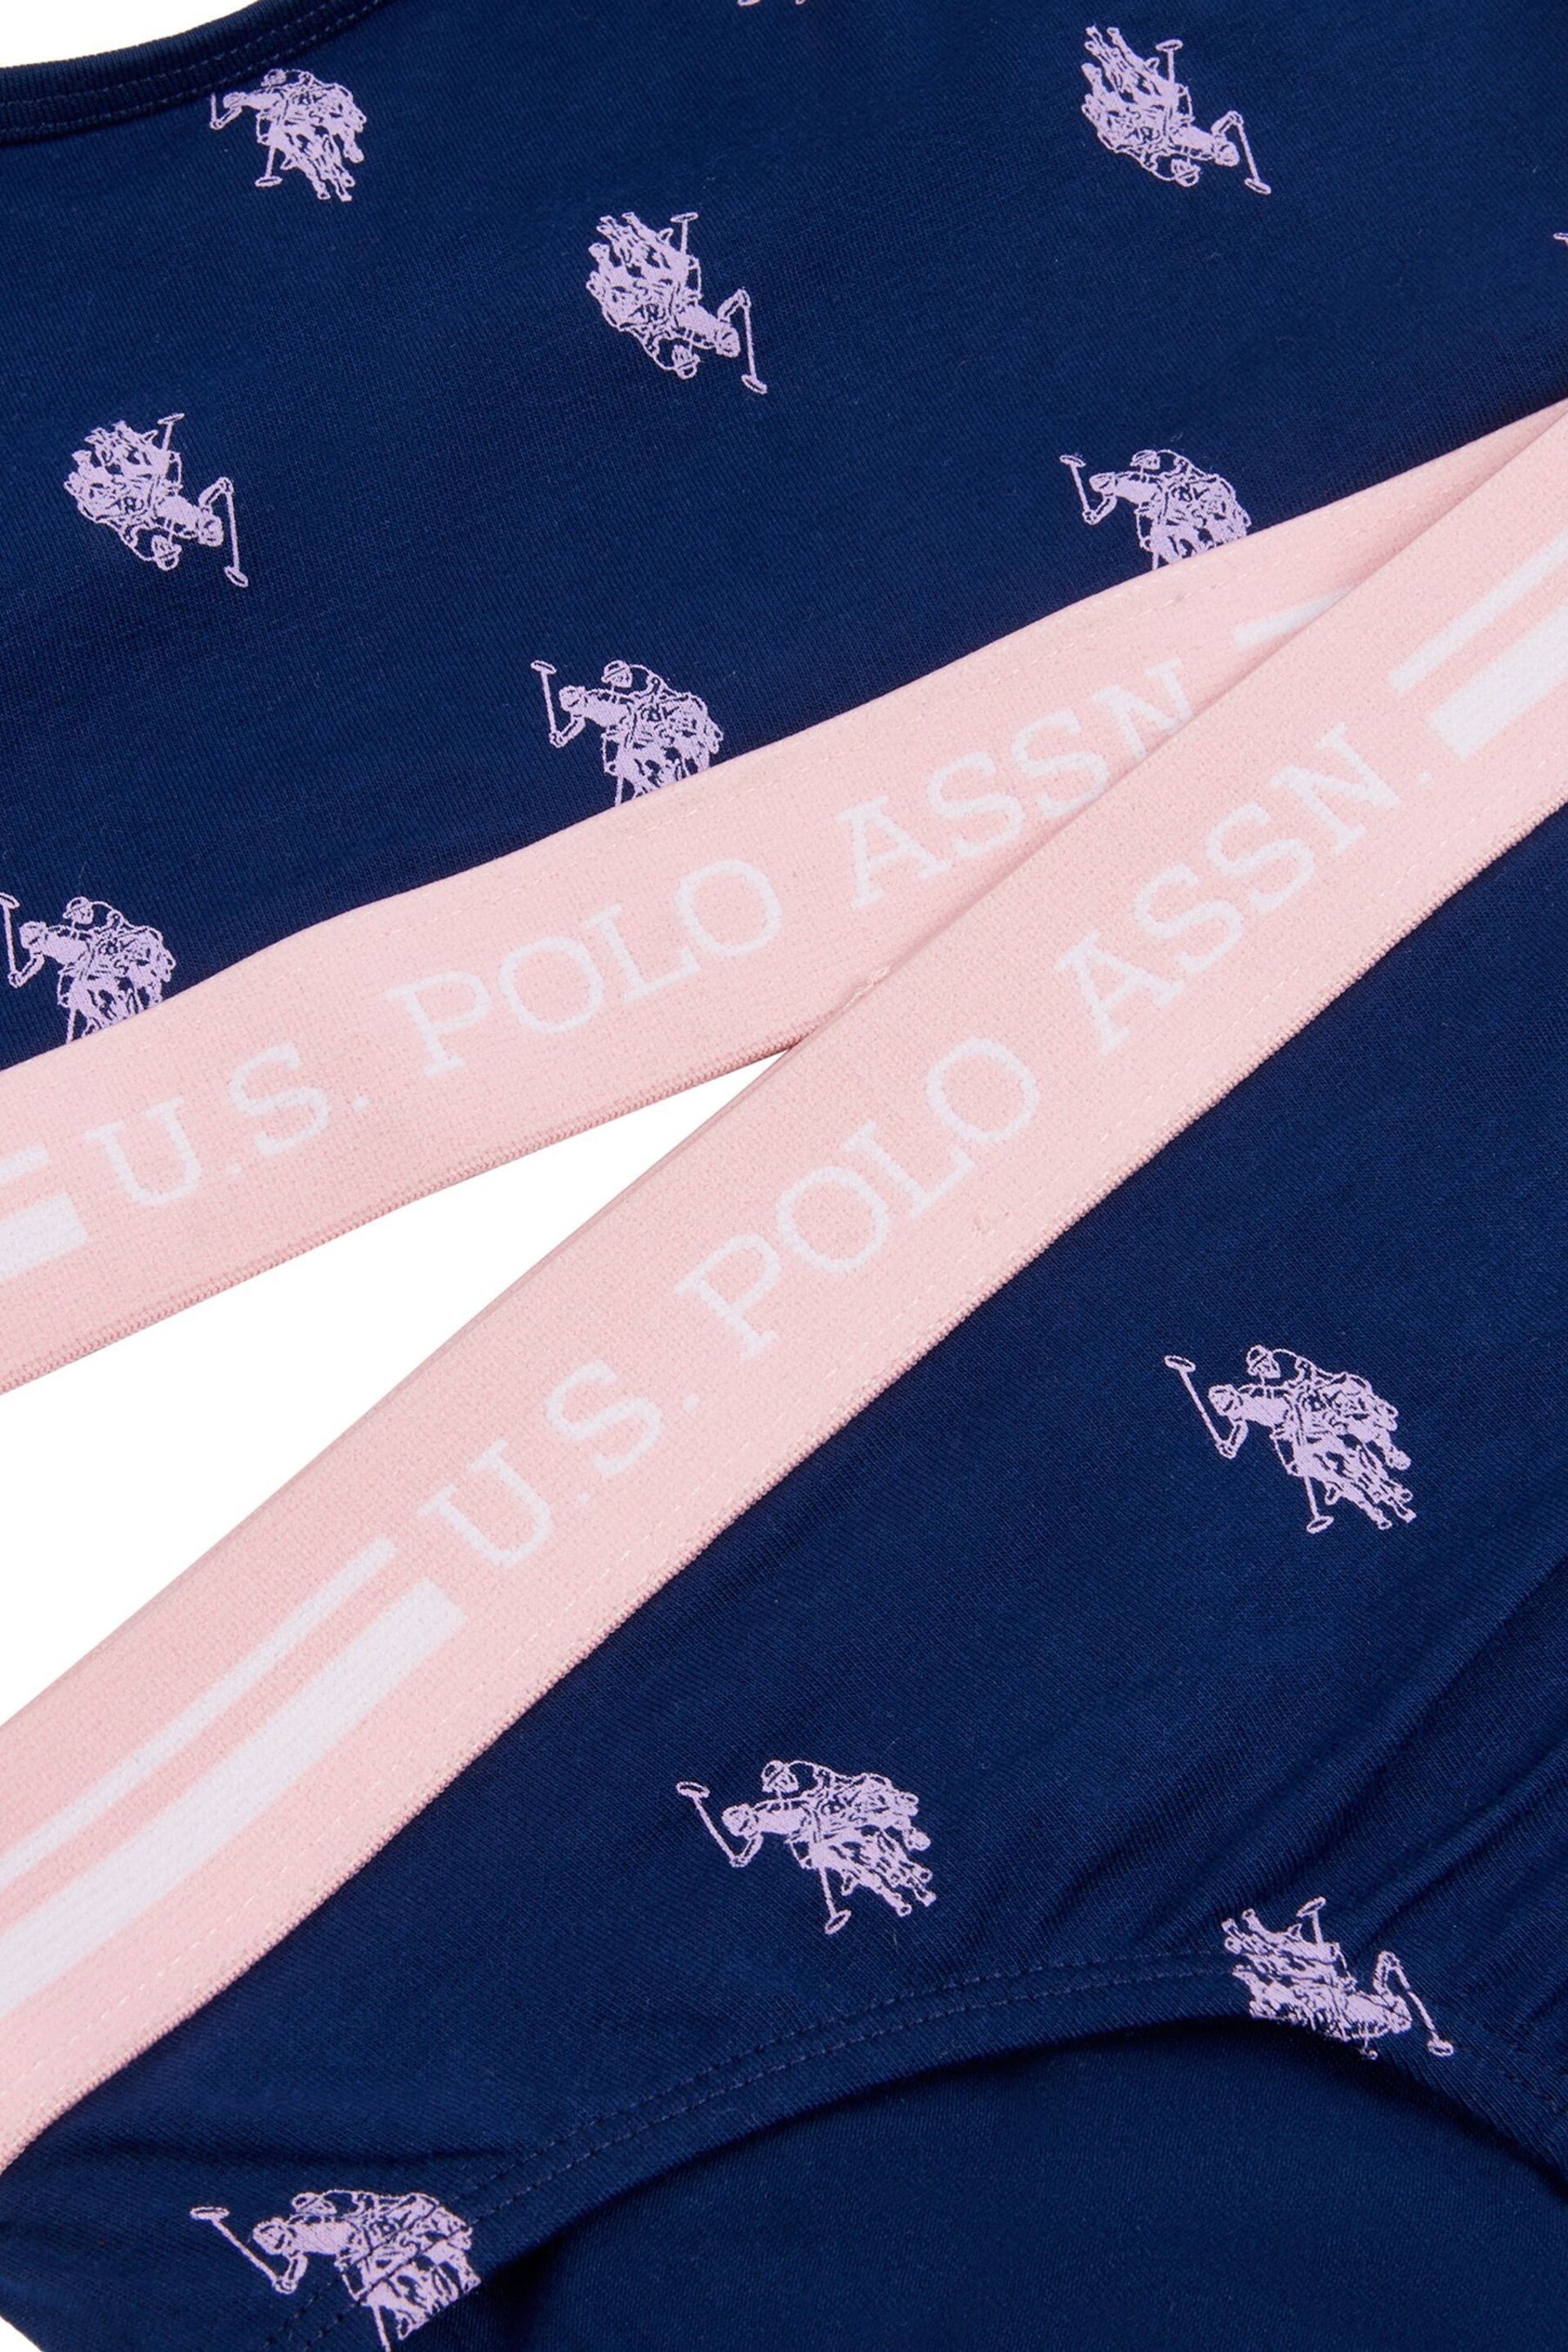 U.S. Polo Assn. Blue Bralette & Brief Underwear Set - Image 3 of 3